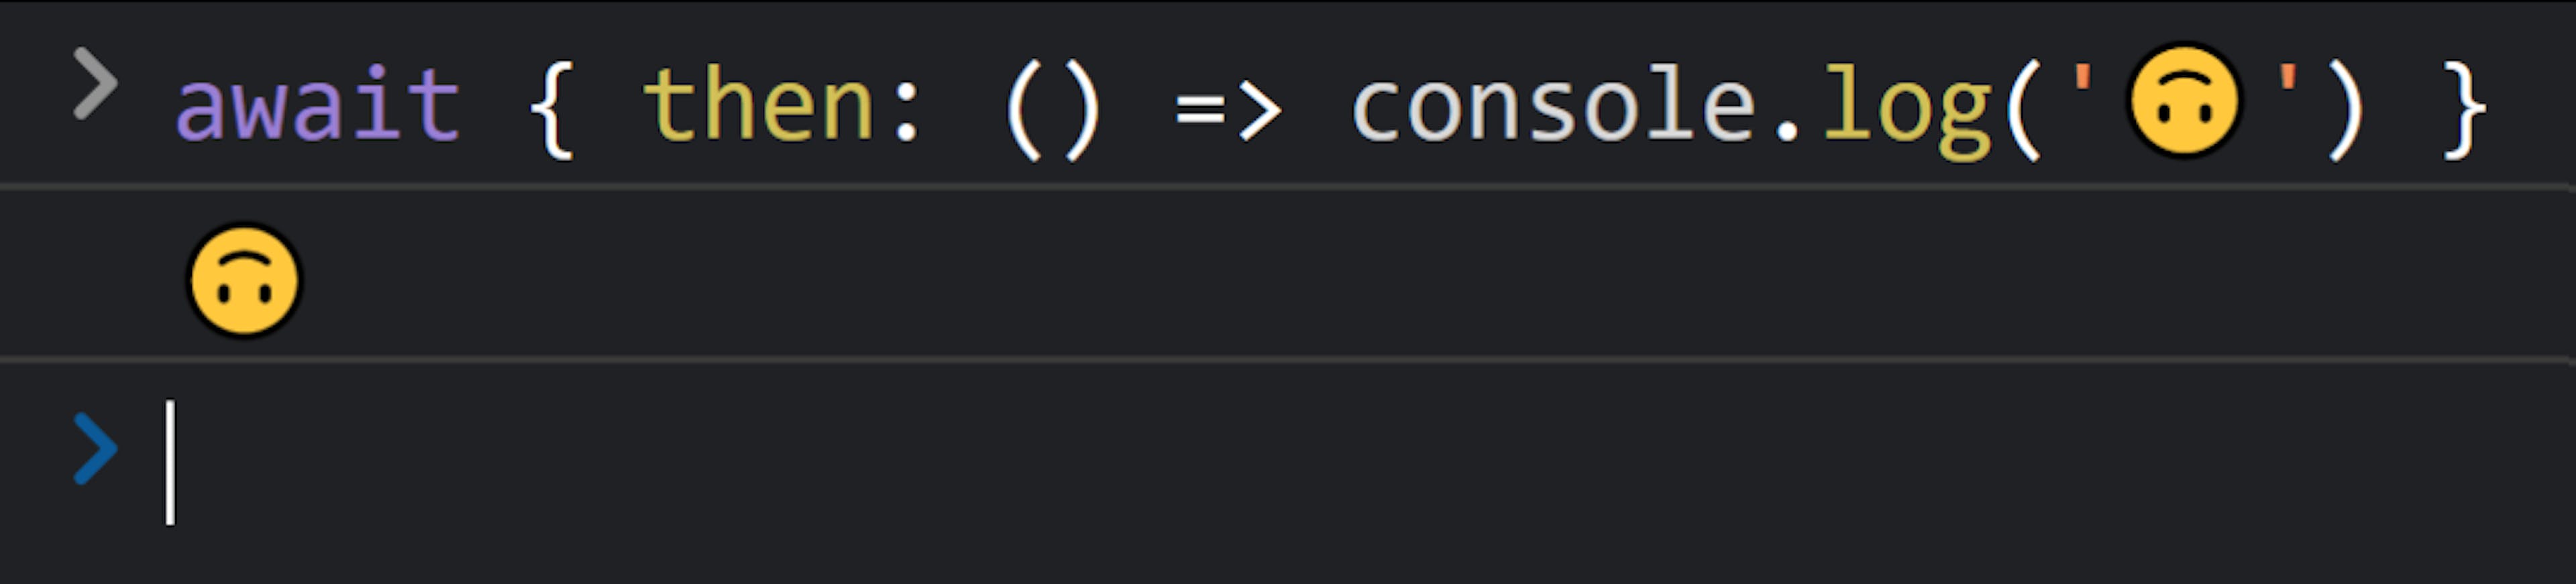 テキスト「await { then: () => console.log('🙃') }」の後に「🙃」が続く JavaScript コンソール。